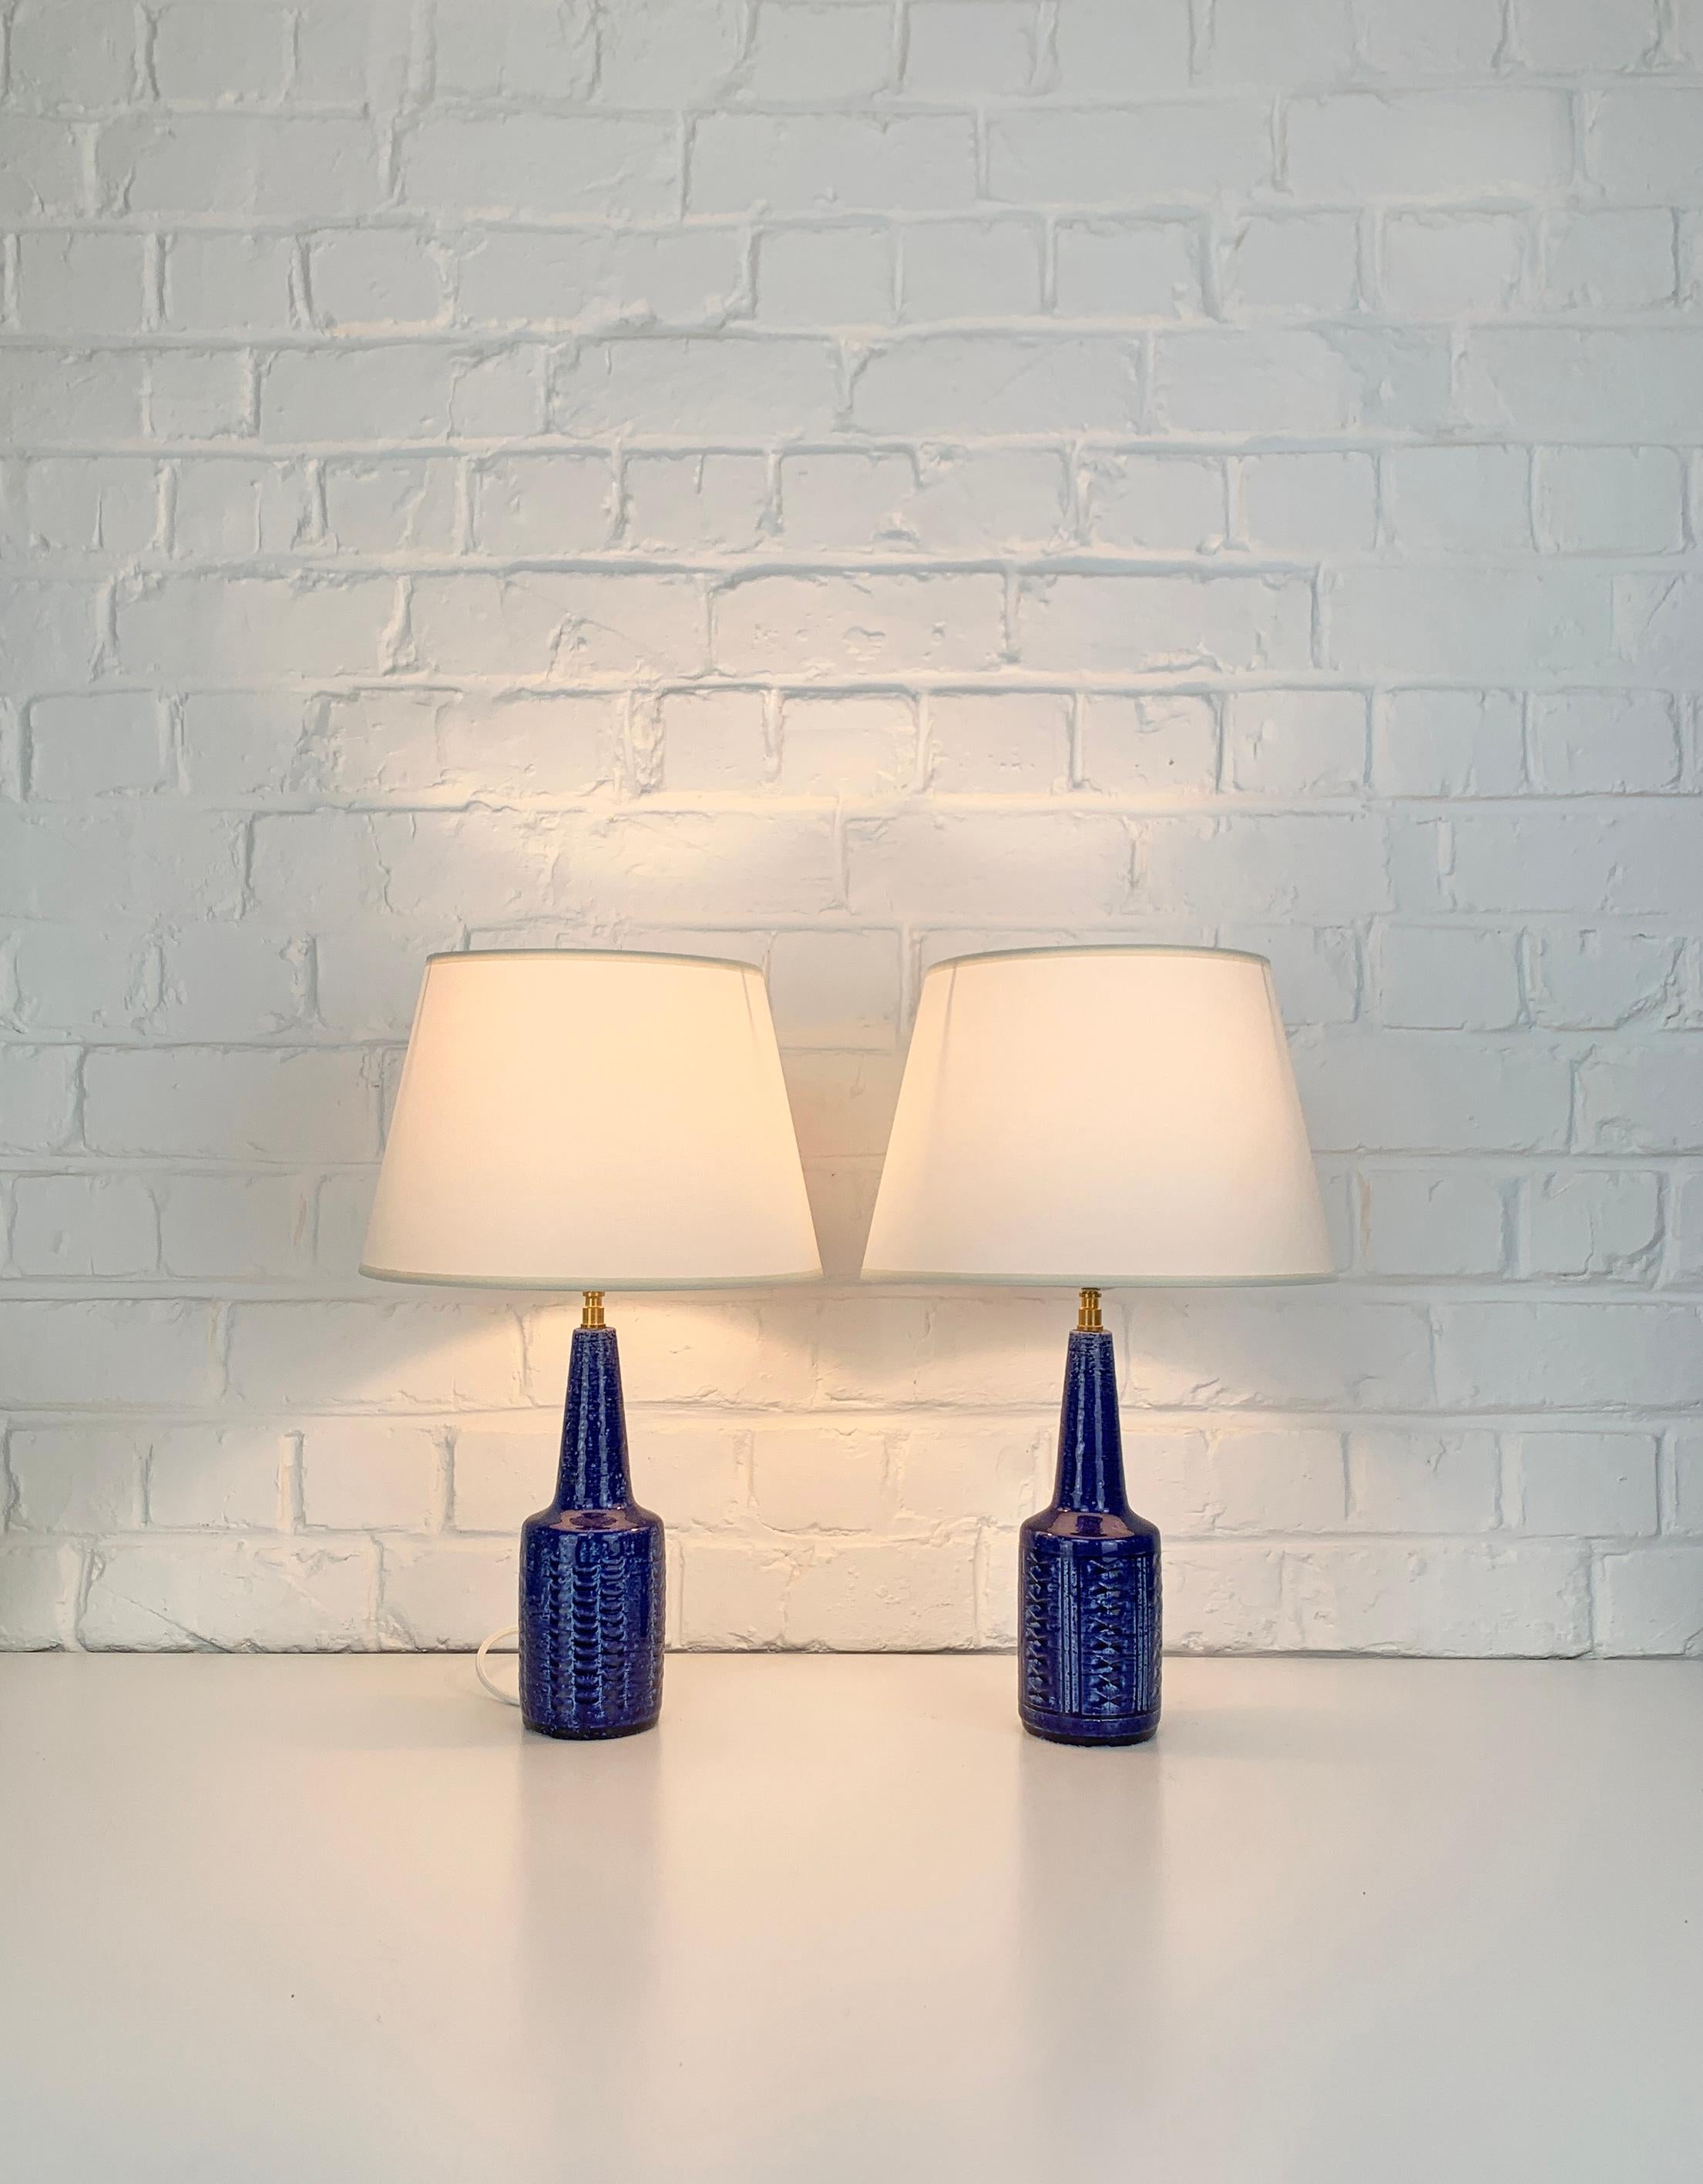 Paire de petites lampes de table en grès, modèle DL29, produites par Palshus (Danemark). 

Les bases des lampes sont recouvertes d'une glaçure bleue et d'un motif imprimé. L'argile chamottée donne une surface naturelle et vivante. Tous deux sont